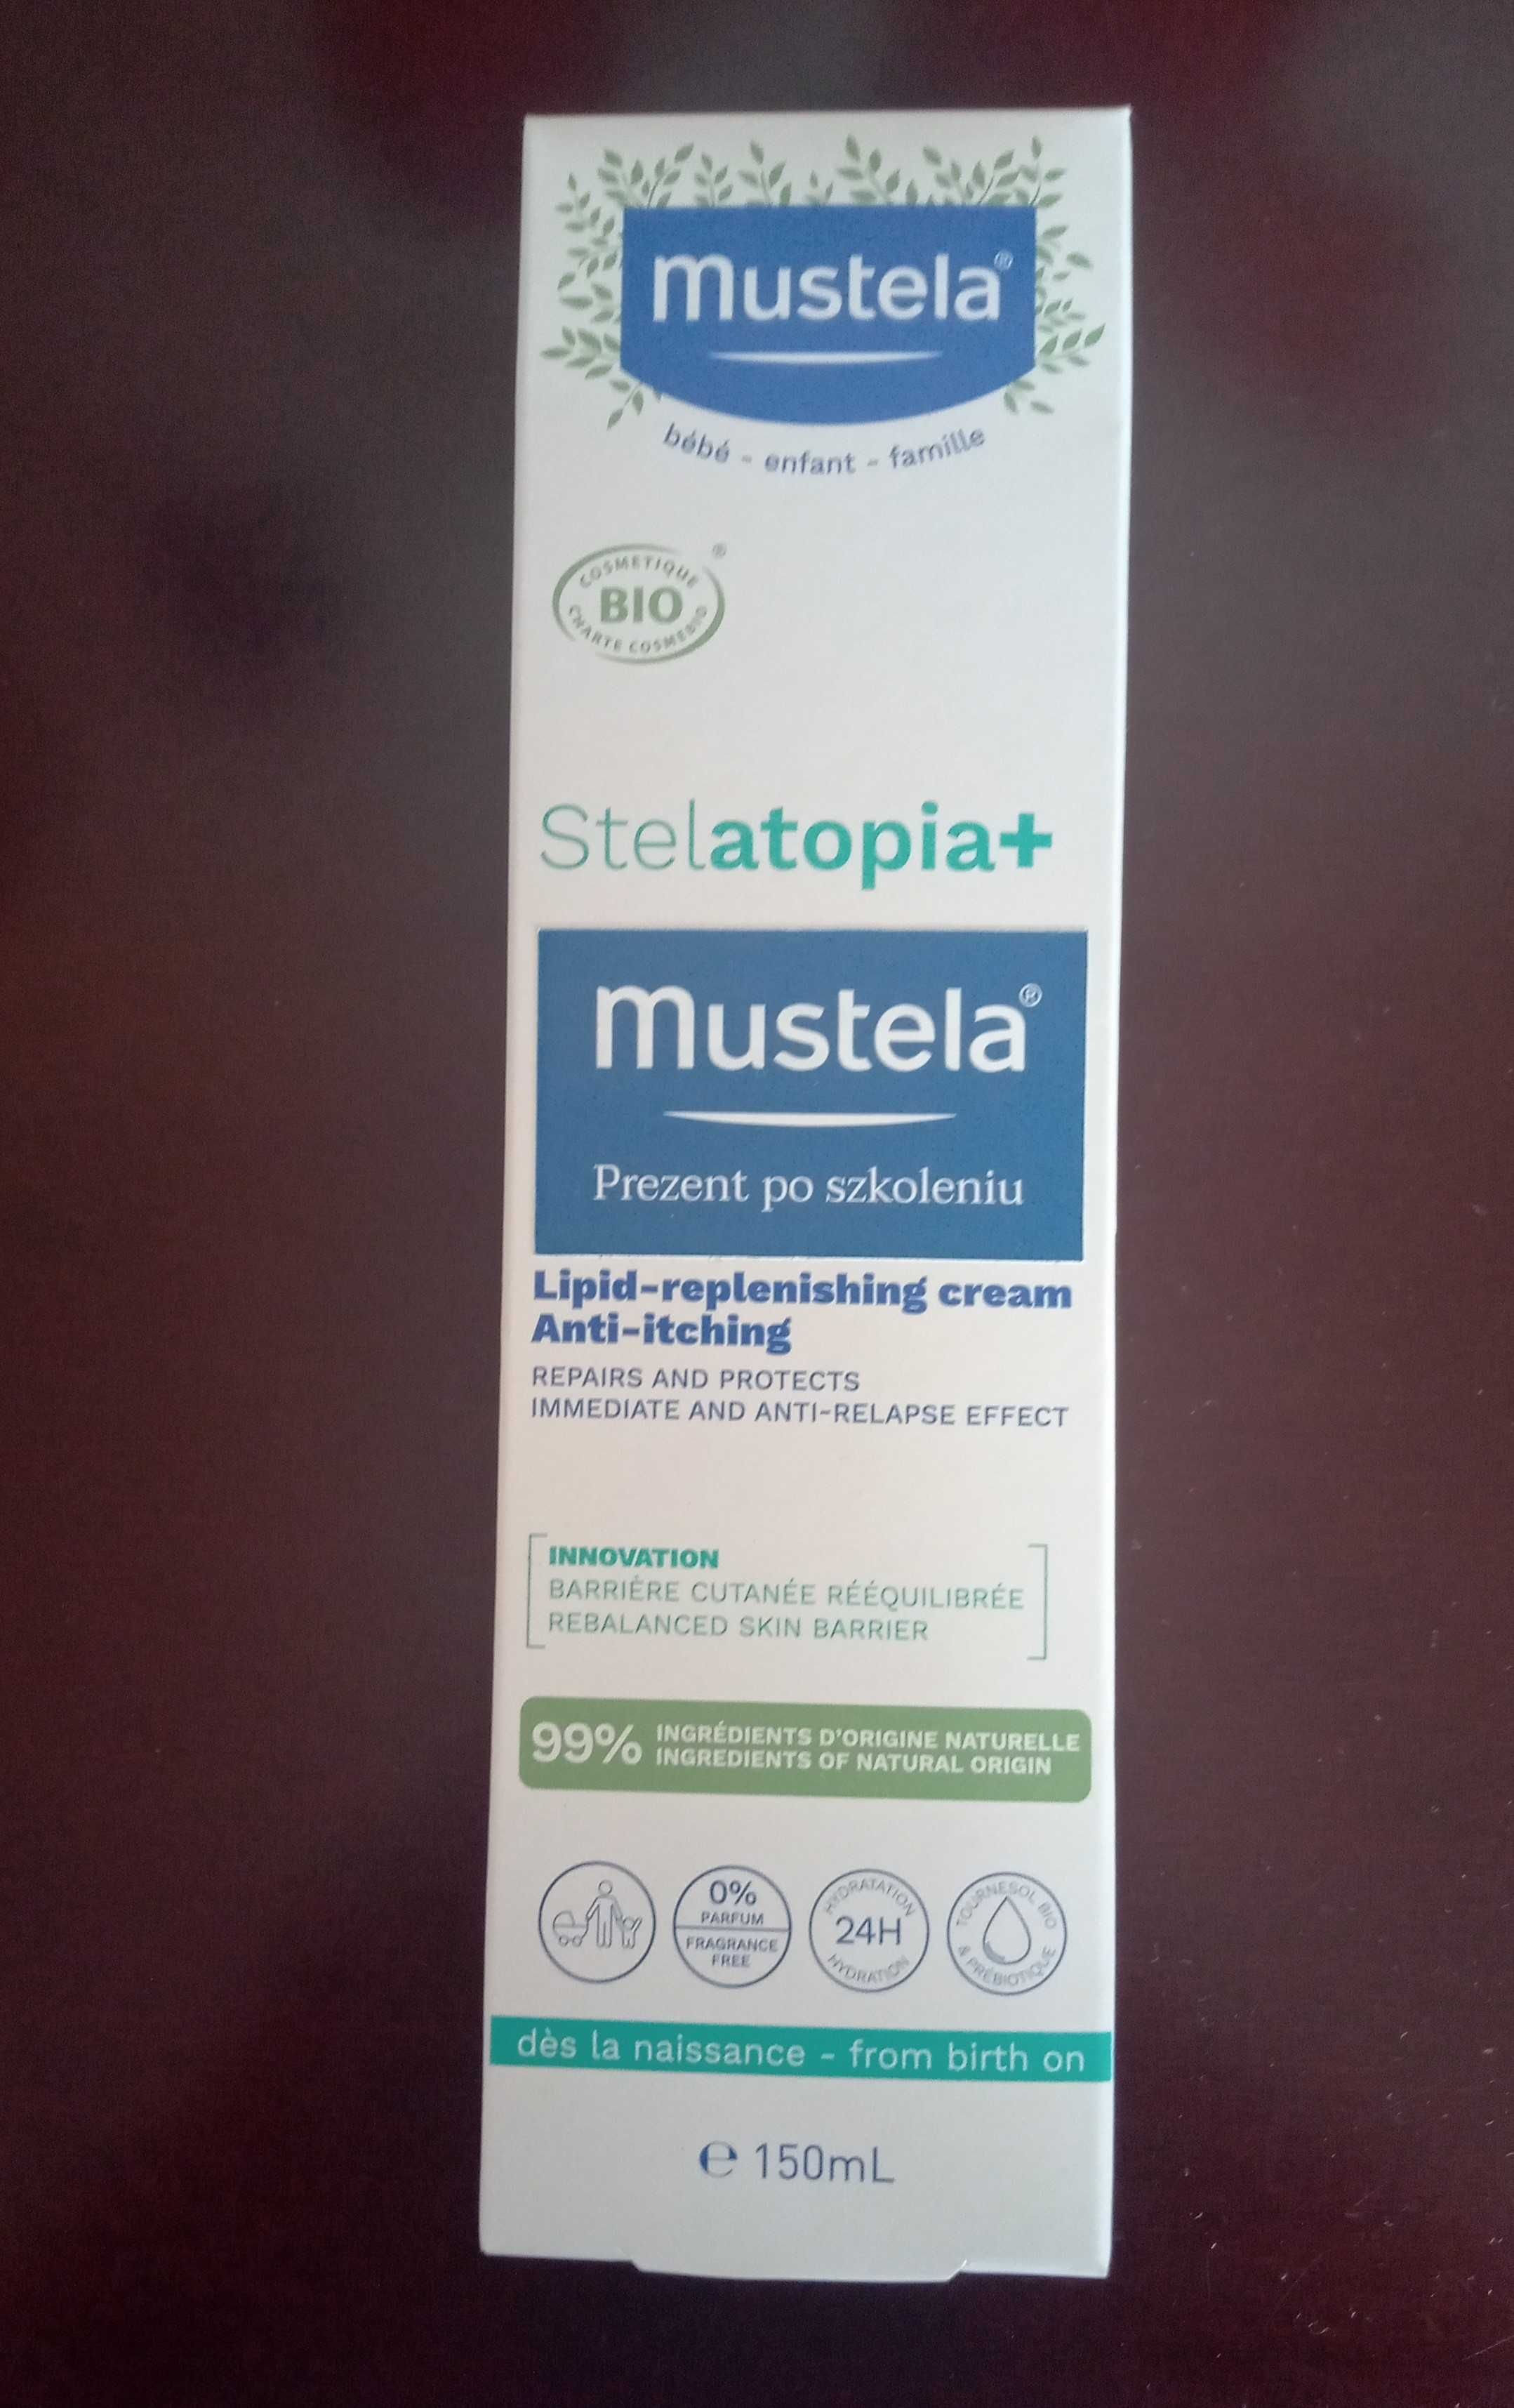 Mustela Stelatopia+ krem uzupełniający lipidy, 150 ml